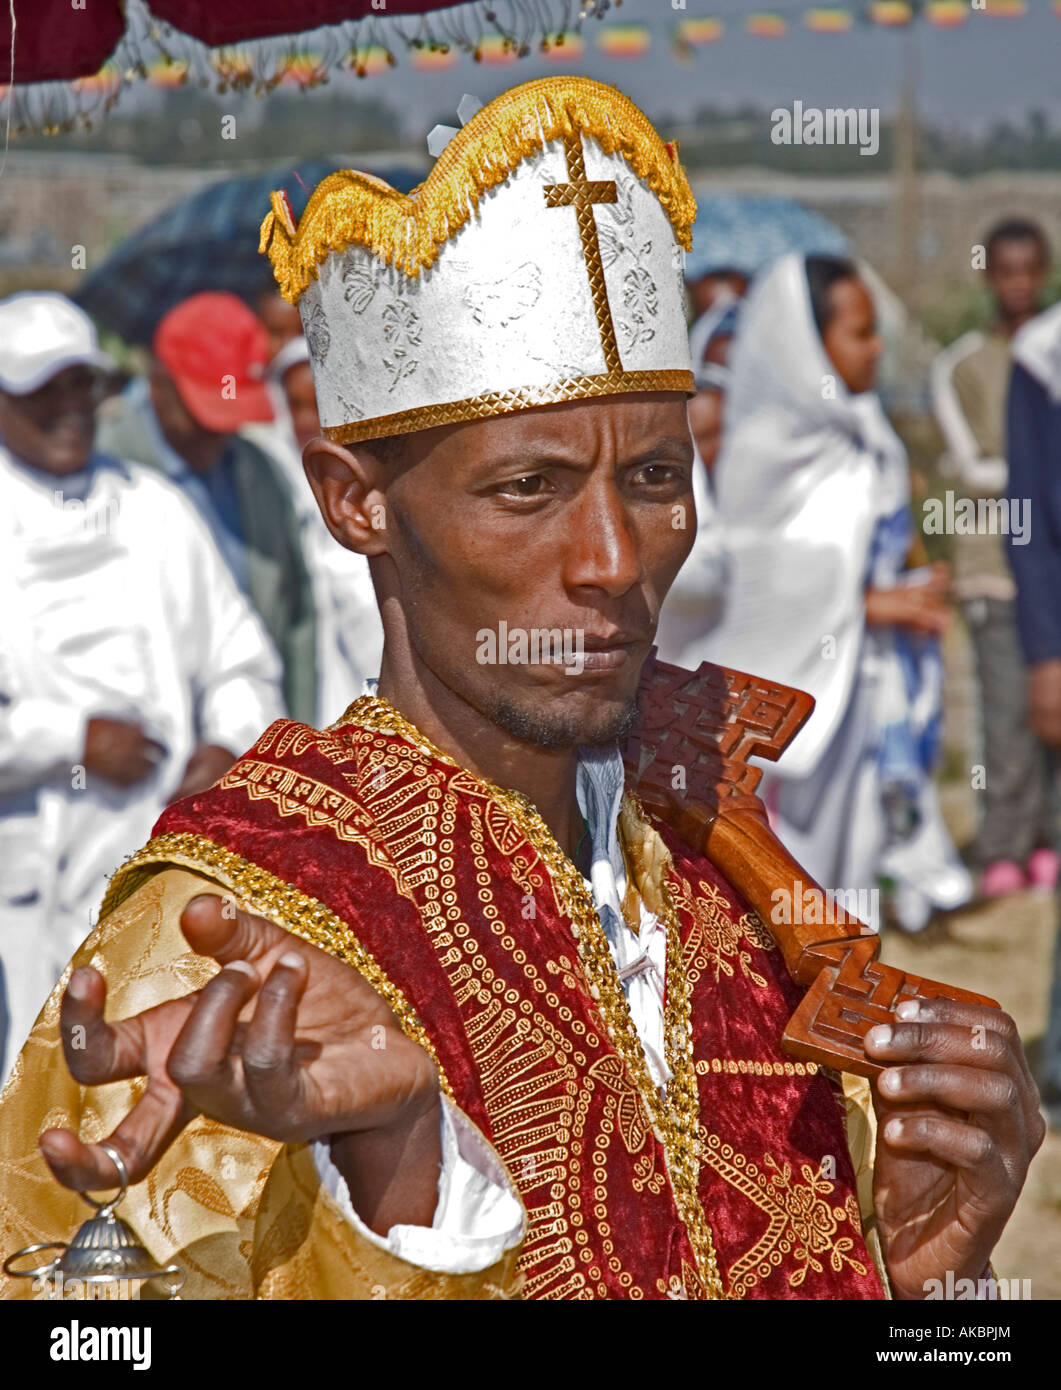 Ethiopian Orthodox Deacon carrying incense burner during Timkat (Epiphany) celebrations in Addis Abeba, Ethiopia Stock Photo